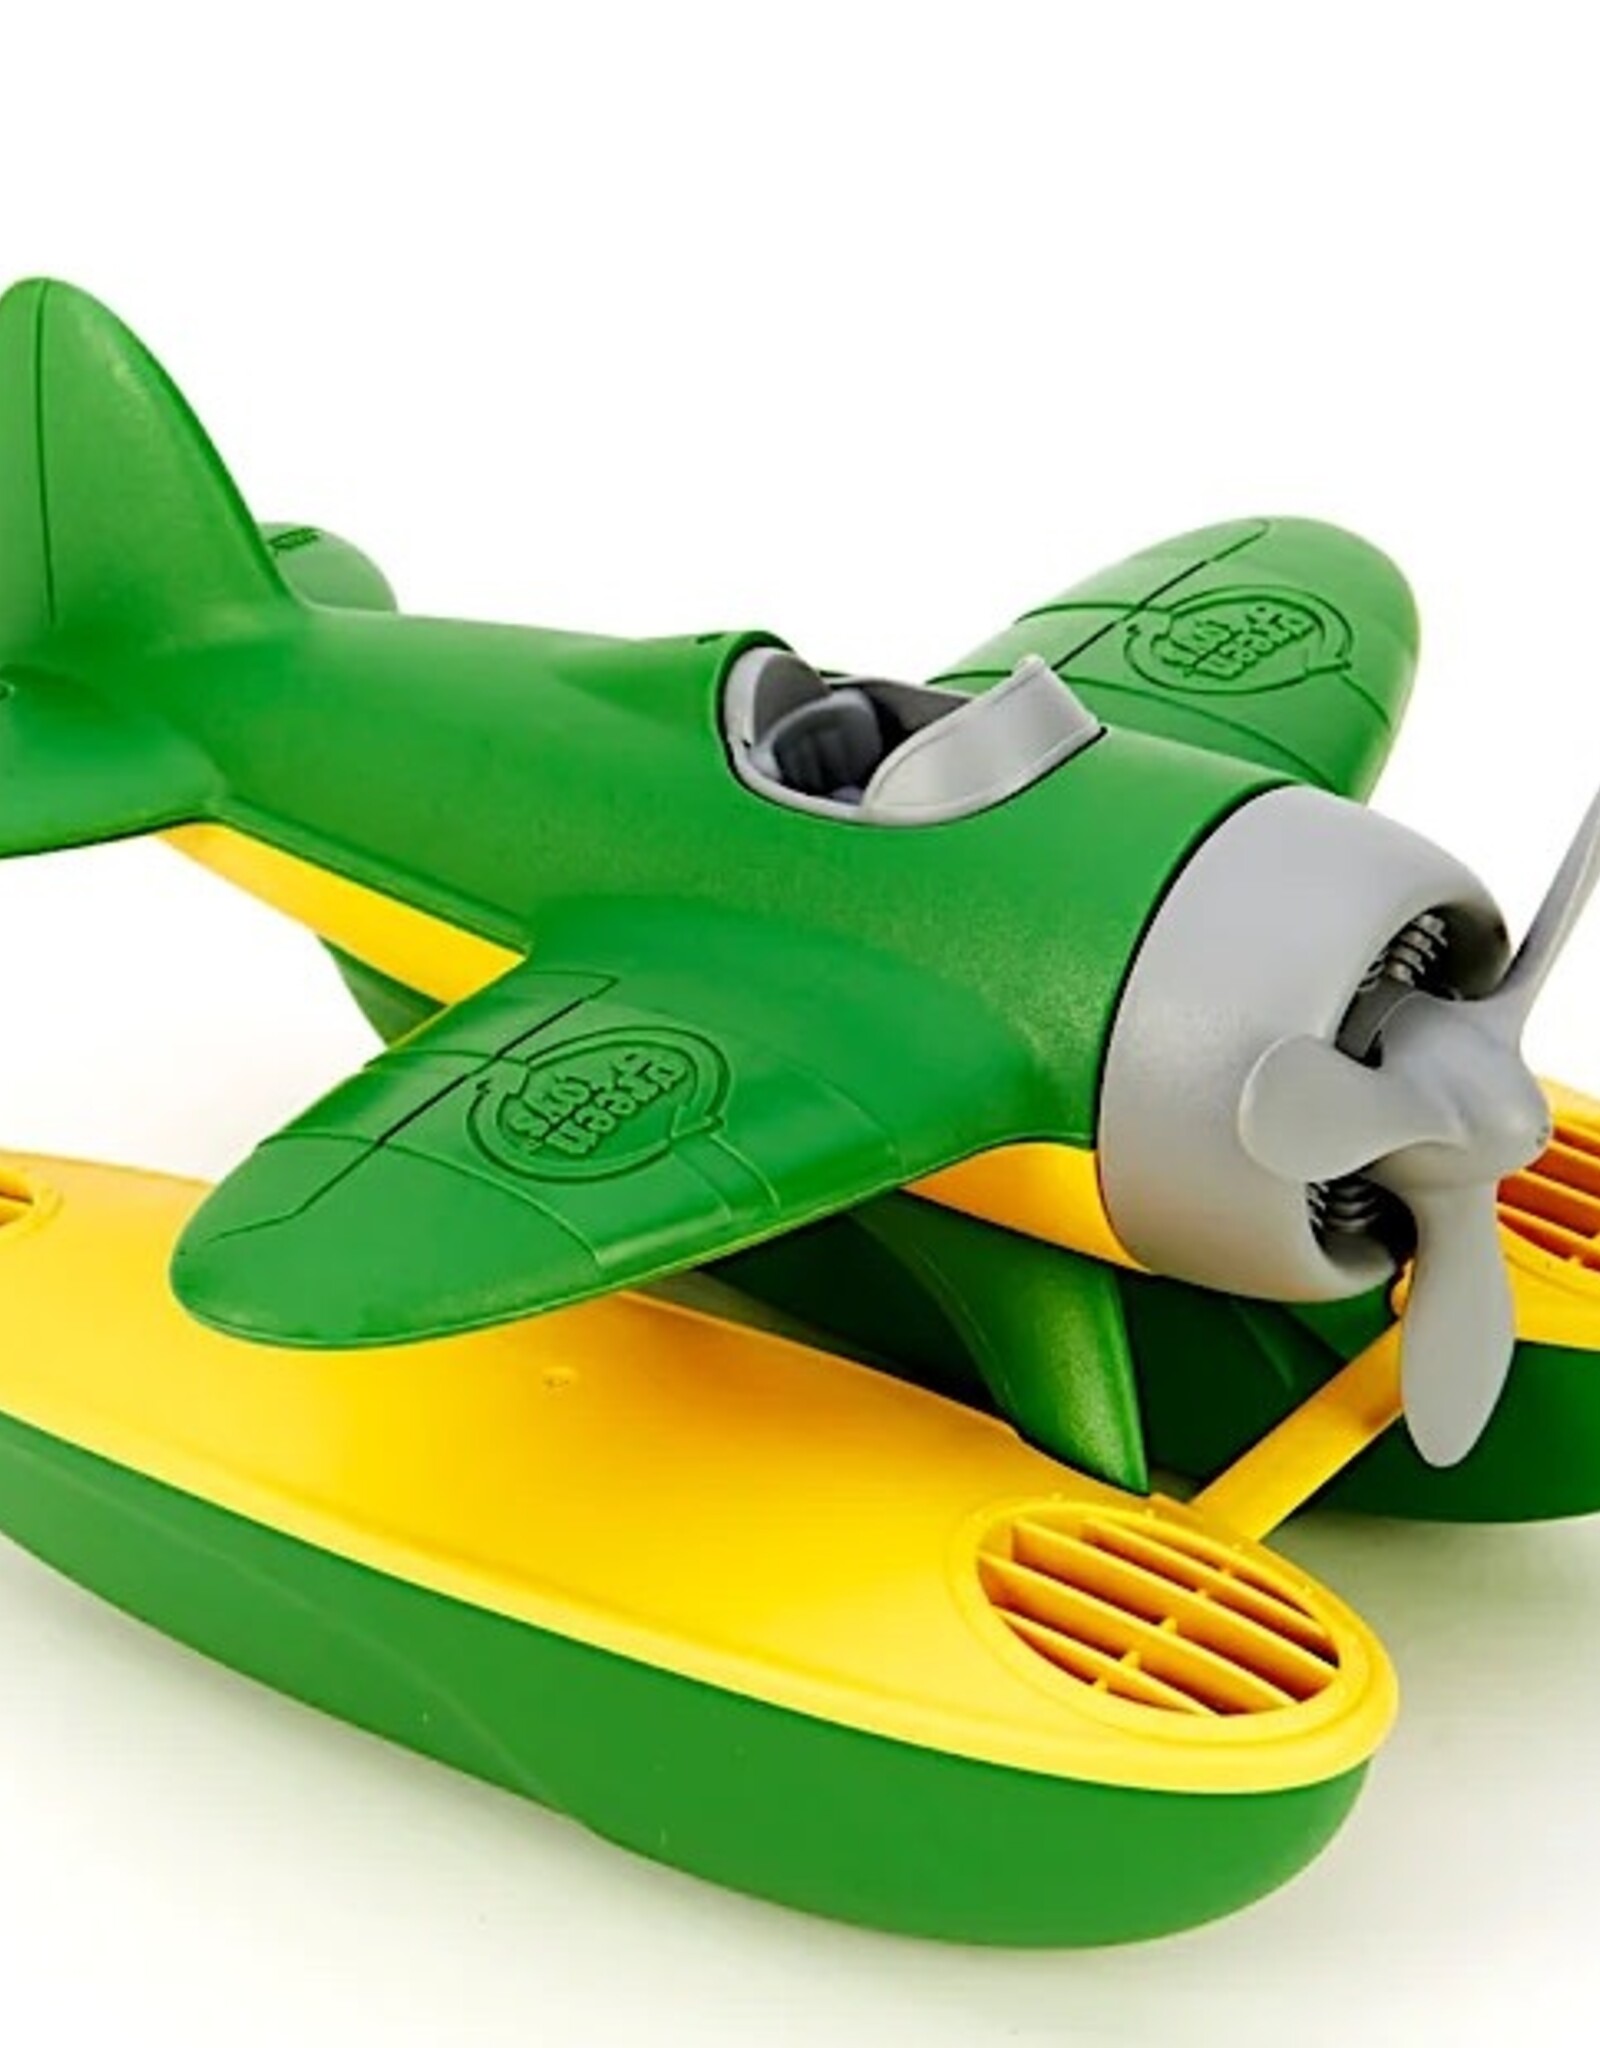 Green Toys Seaplane-green